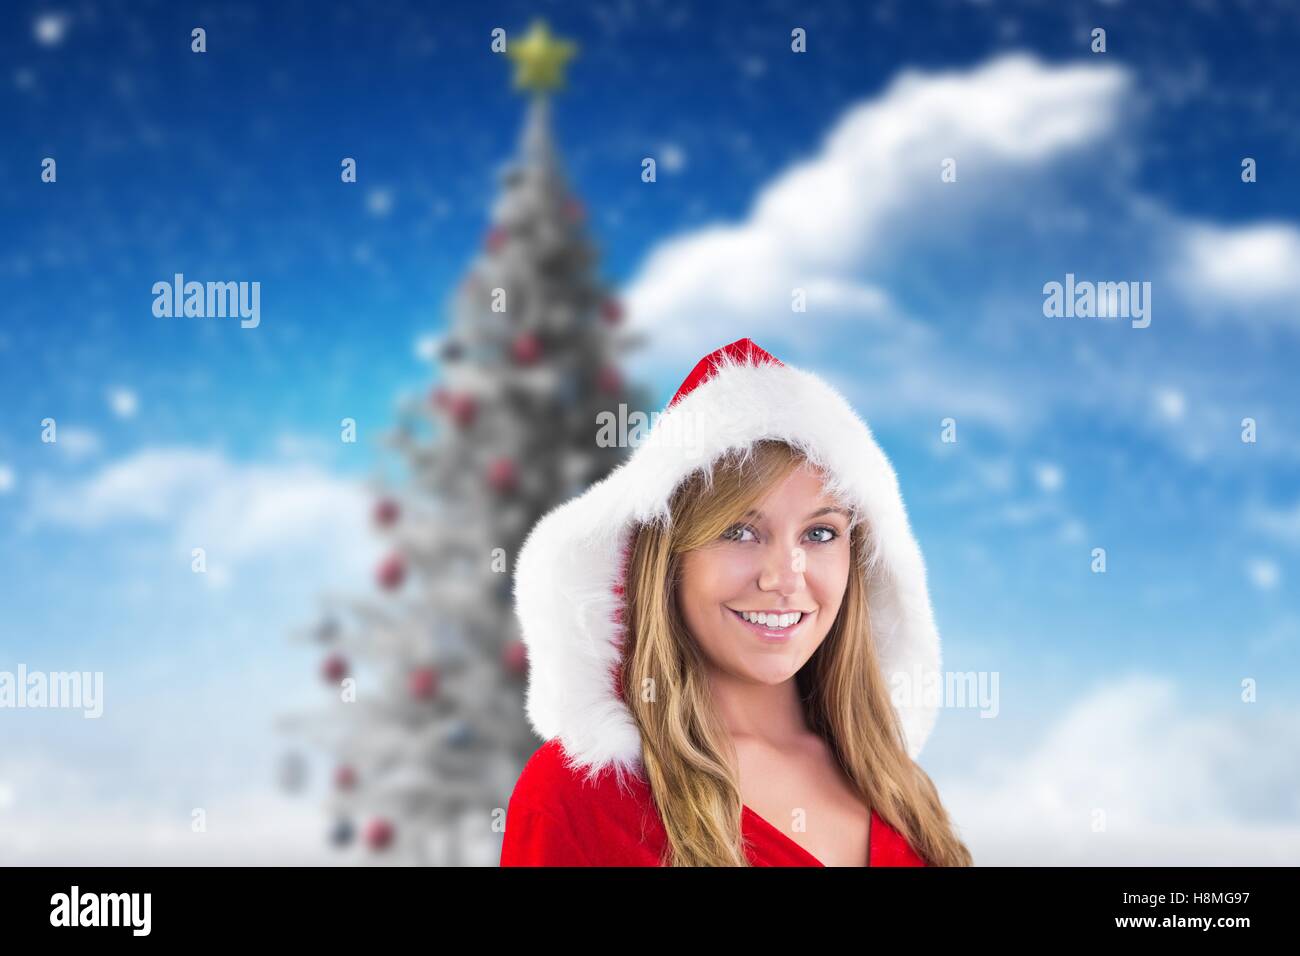 Beautiful woman in santa costume smiling at camera Stock Photo